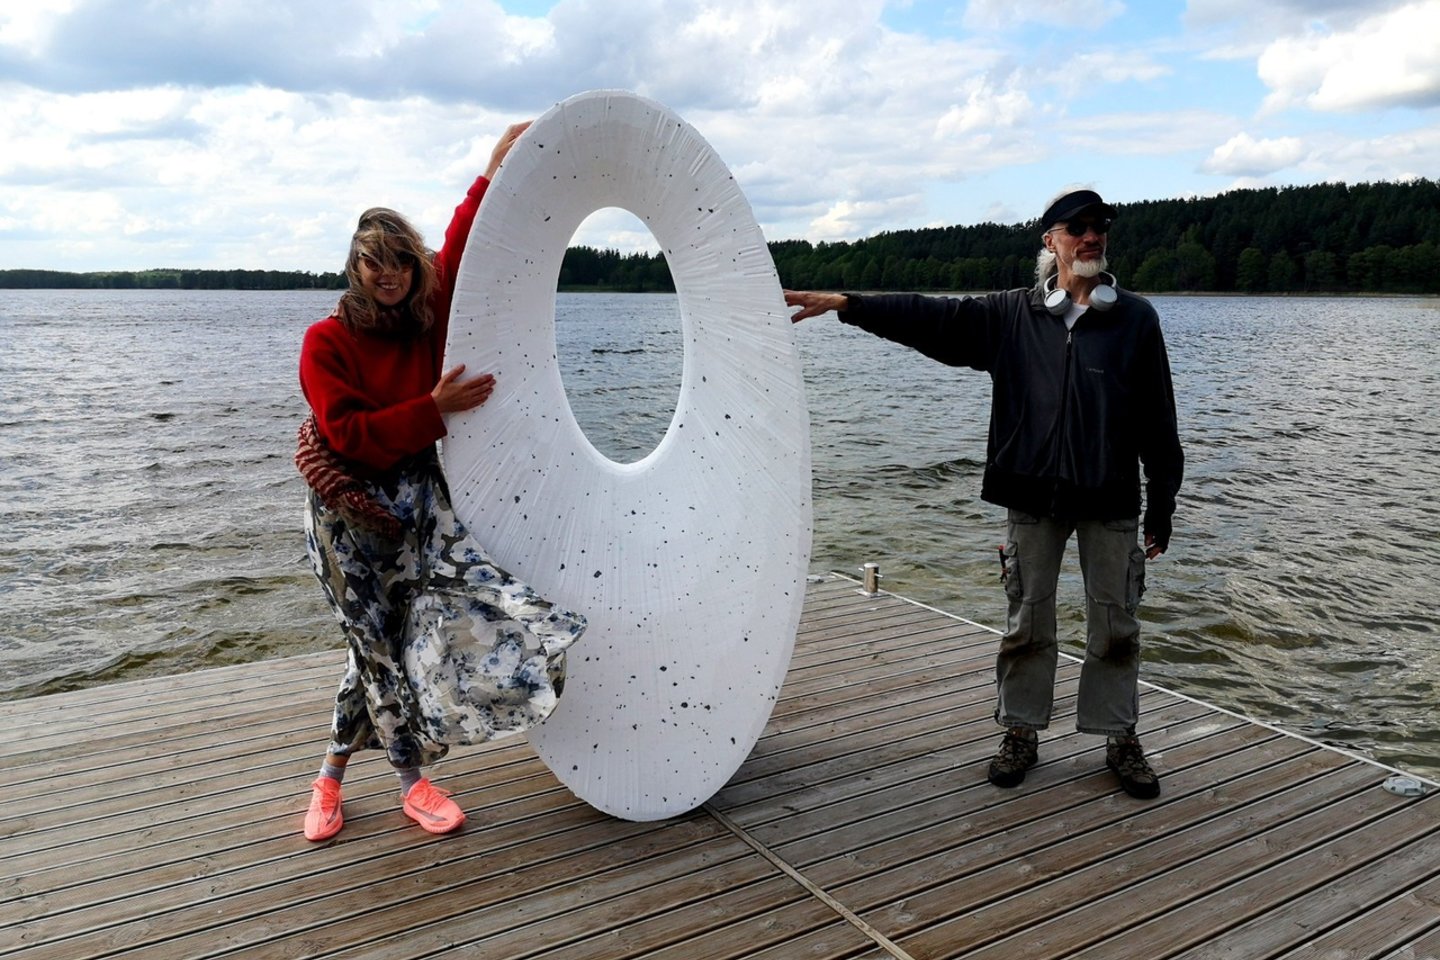 Paskutinę gegužės savaitę Ignalinos krašte prasidėjo Ažvinčių meno centro (AMC) organizuojamas unikalus daugiau kaip mėnesį truksiantis kultūrinis renginys – menų pleneras-ekspedicija „Vaizduotė ant vandens“ ir „Orakulas“.<br>Rengėjų nuotr. 